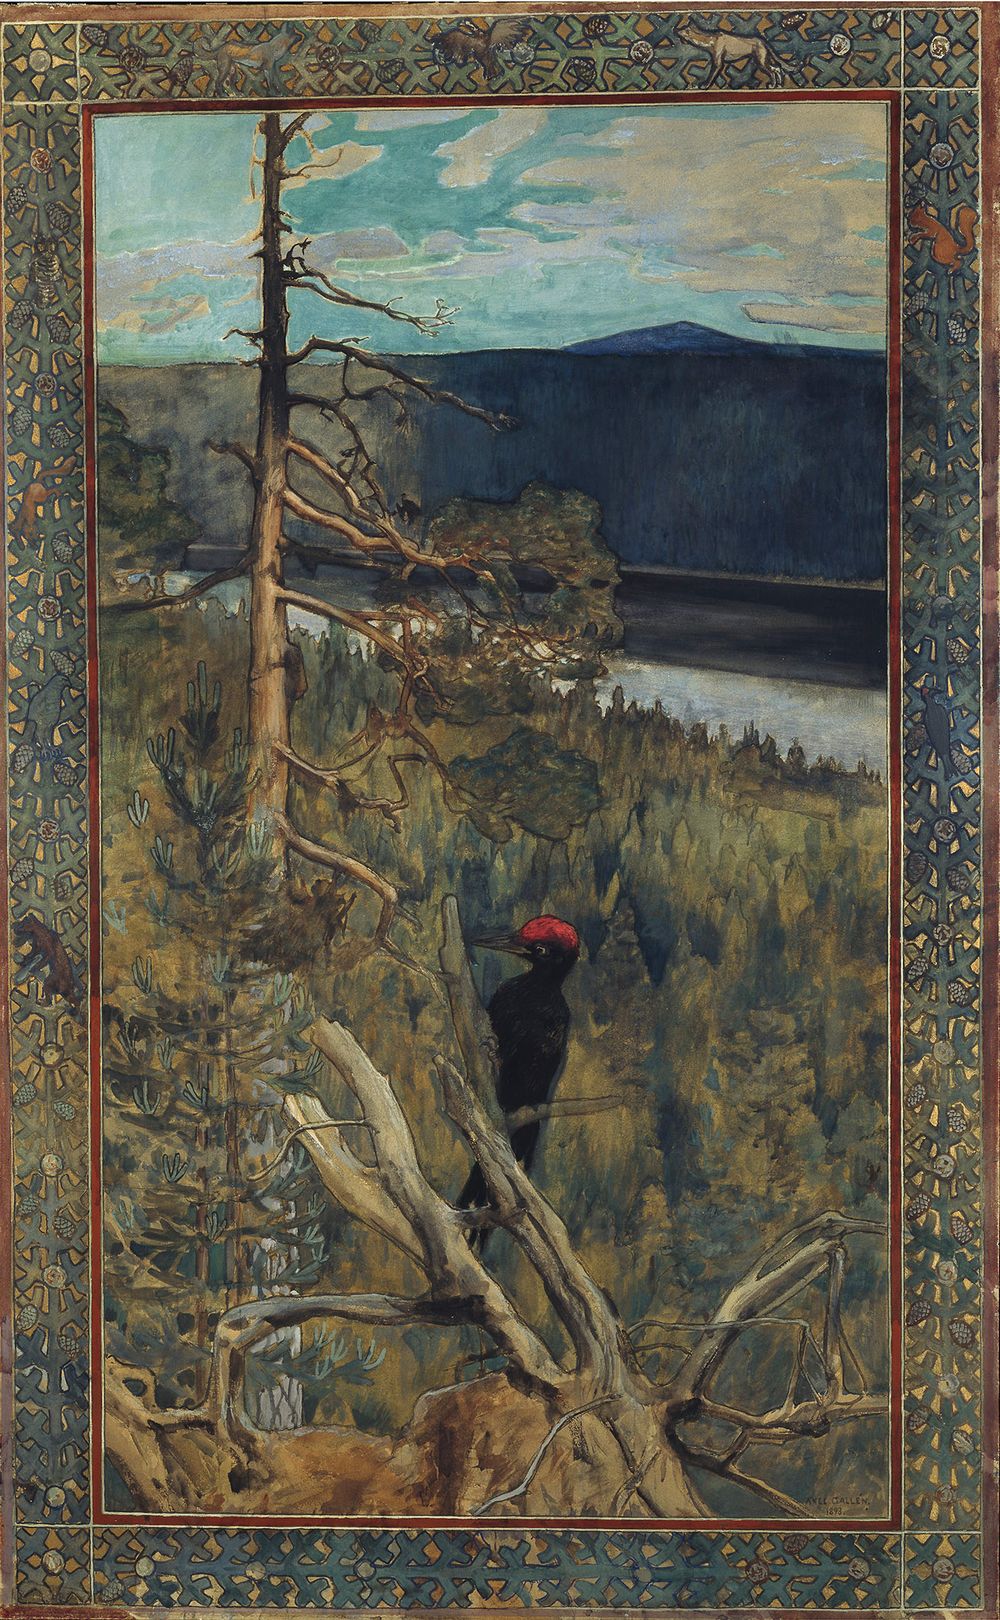 黑色啄木鸟 by 阿克塞利 加伦-卡勒拉 - 1893 - 145 x 90 cm 芬兰国家美术馆